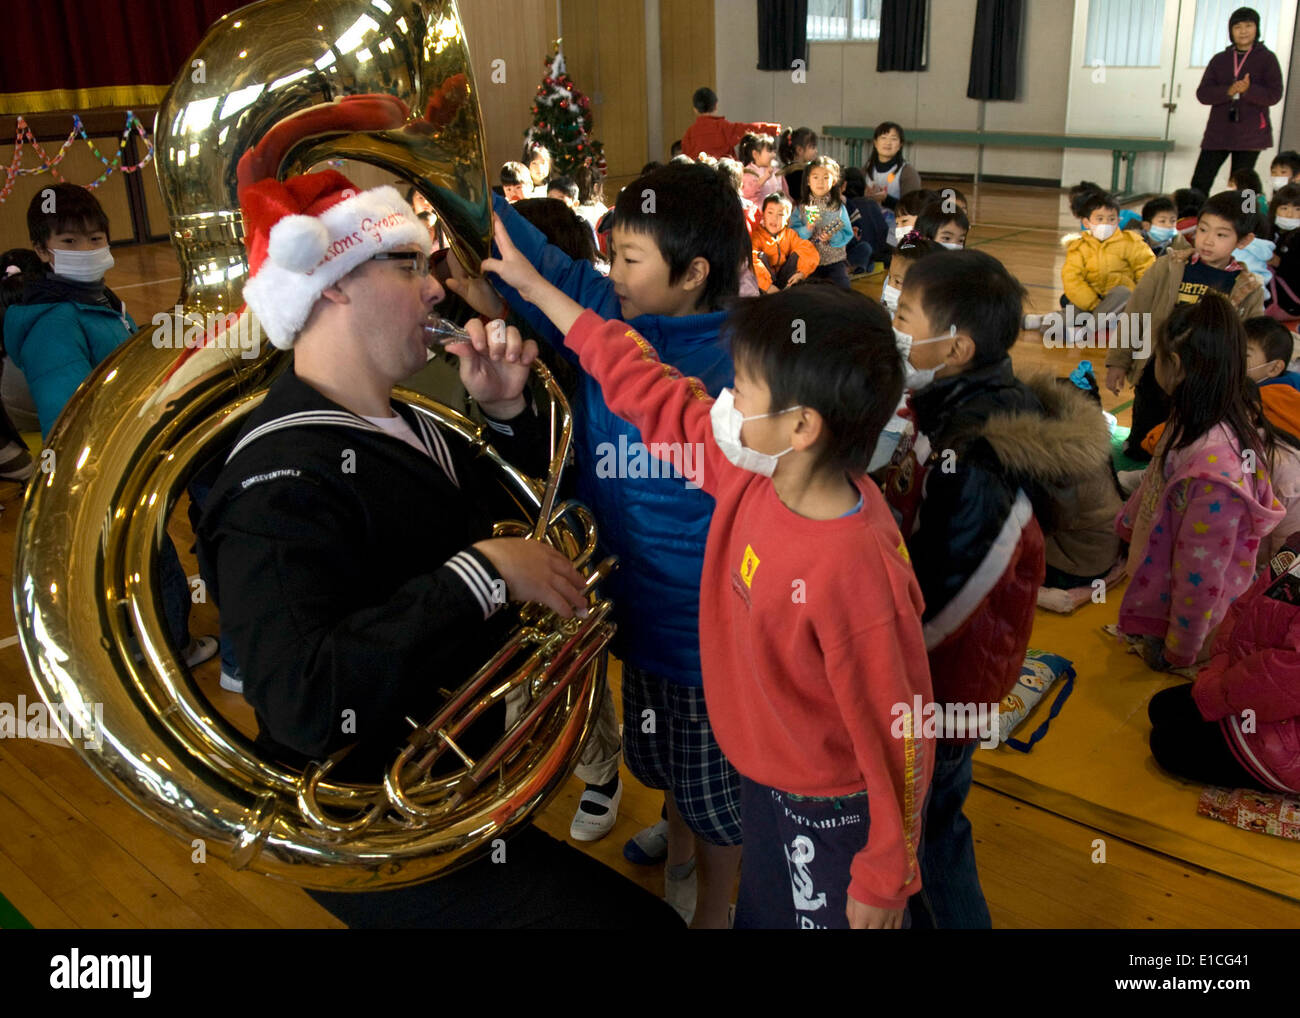 Musicien de 2e classe de la Marine américaine James Brownell, de la 7ème Flotte américaine brass band, exécute pour les enfants lors d'un concert d'une maison de vacances Banque D'Images